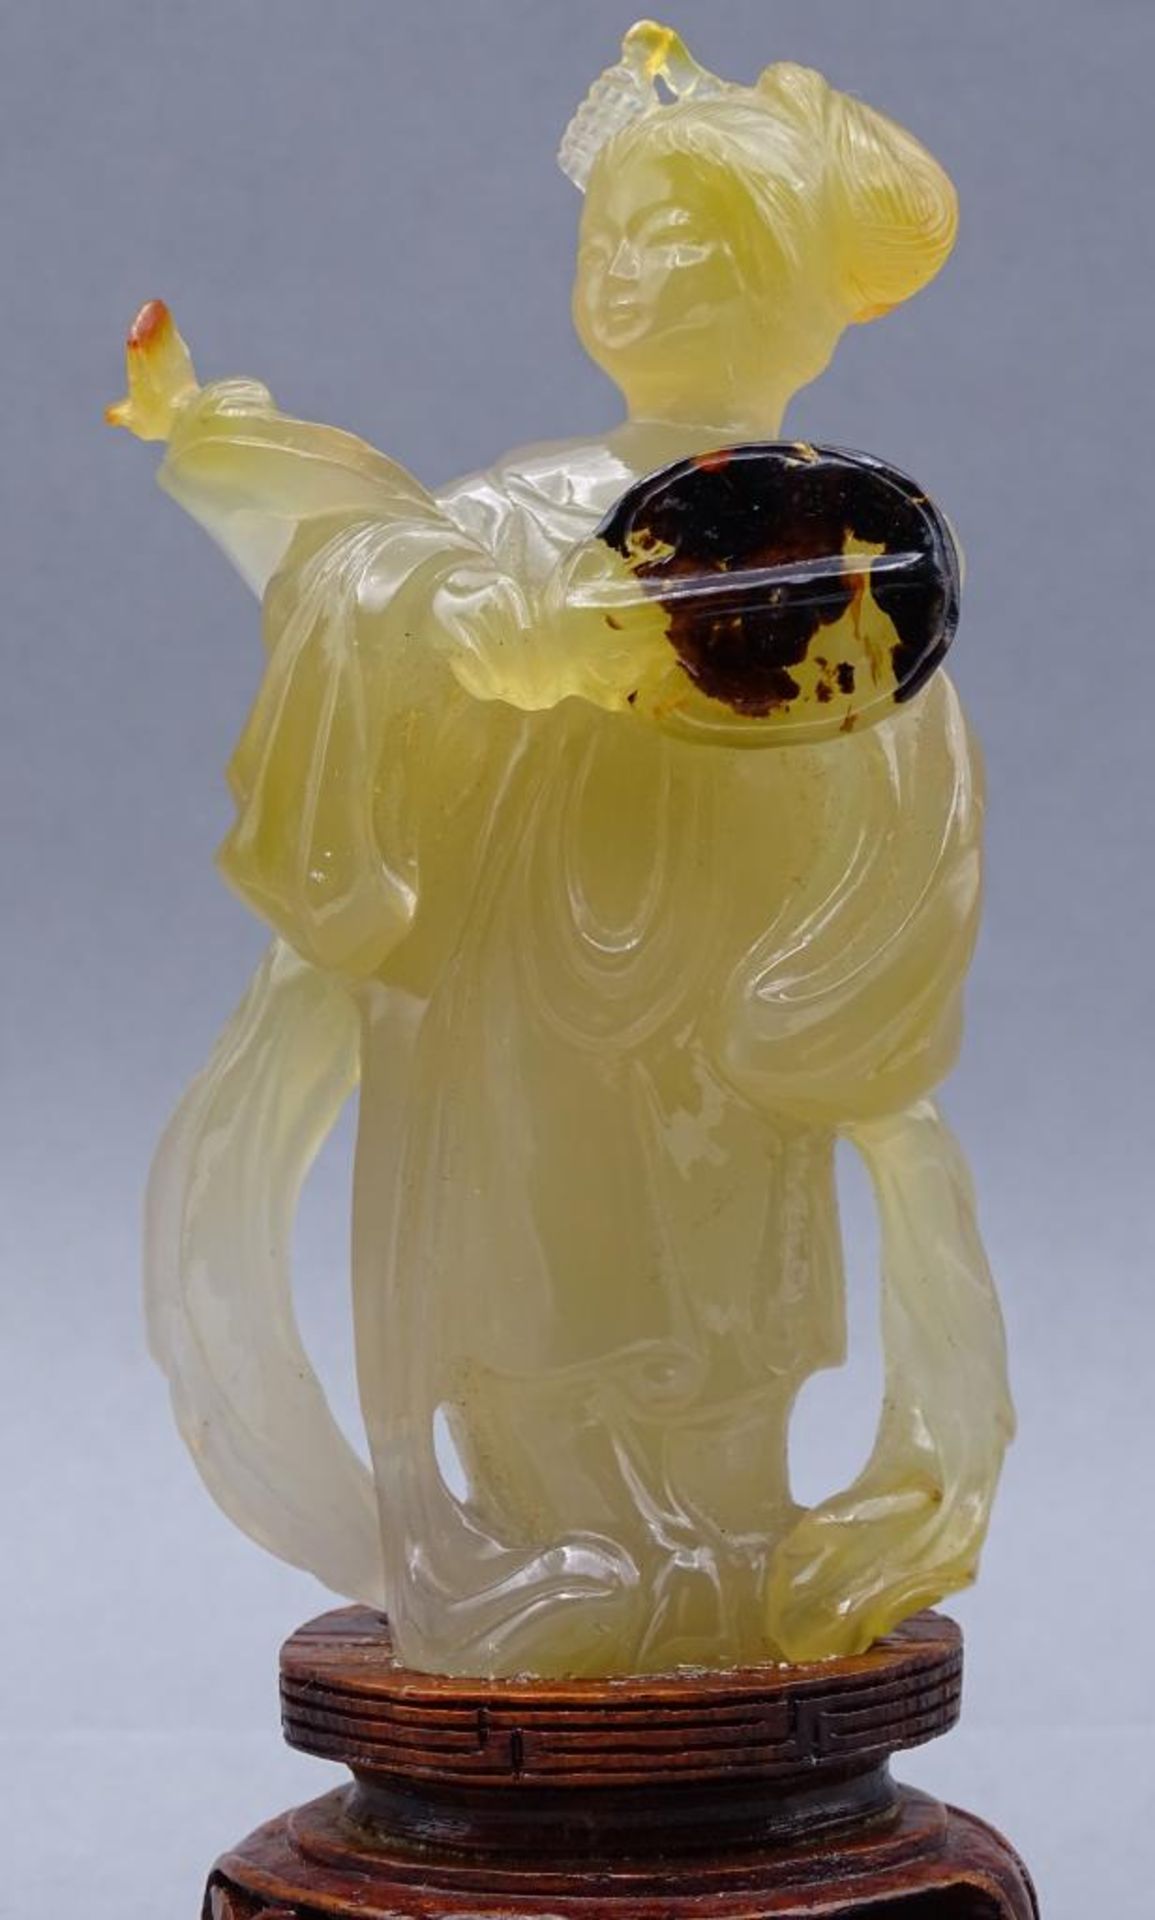 gelbe Jadeschnitzerei, Chinesin mit Fächer auf Holzsockel, China, 18/19. Jhd? , H-ca. 14 cm, rechte - Bild 2 aus 7